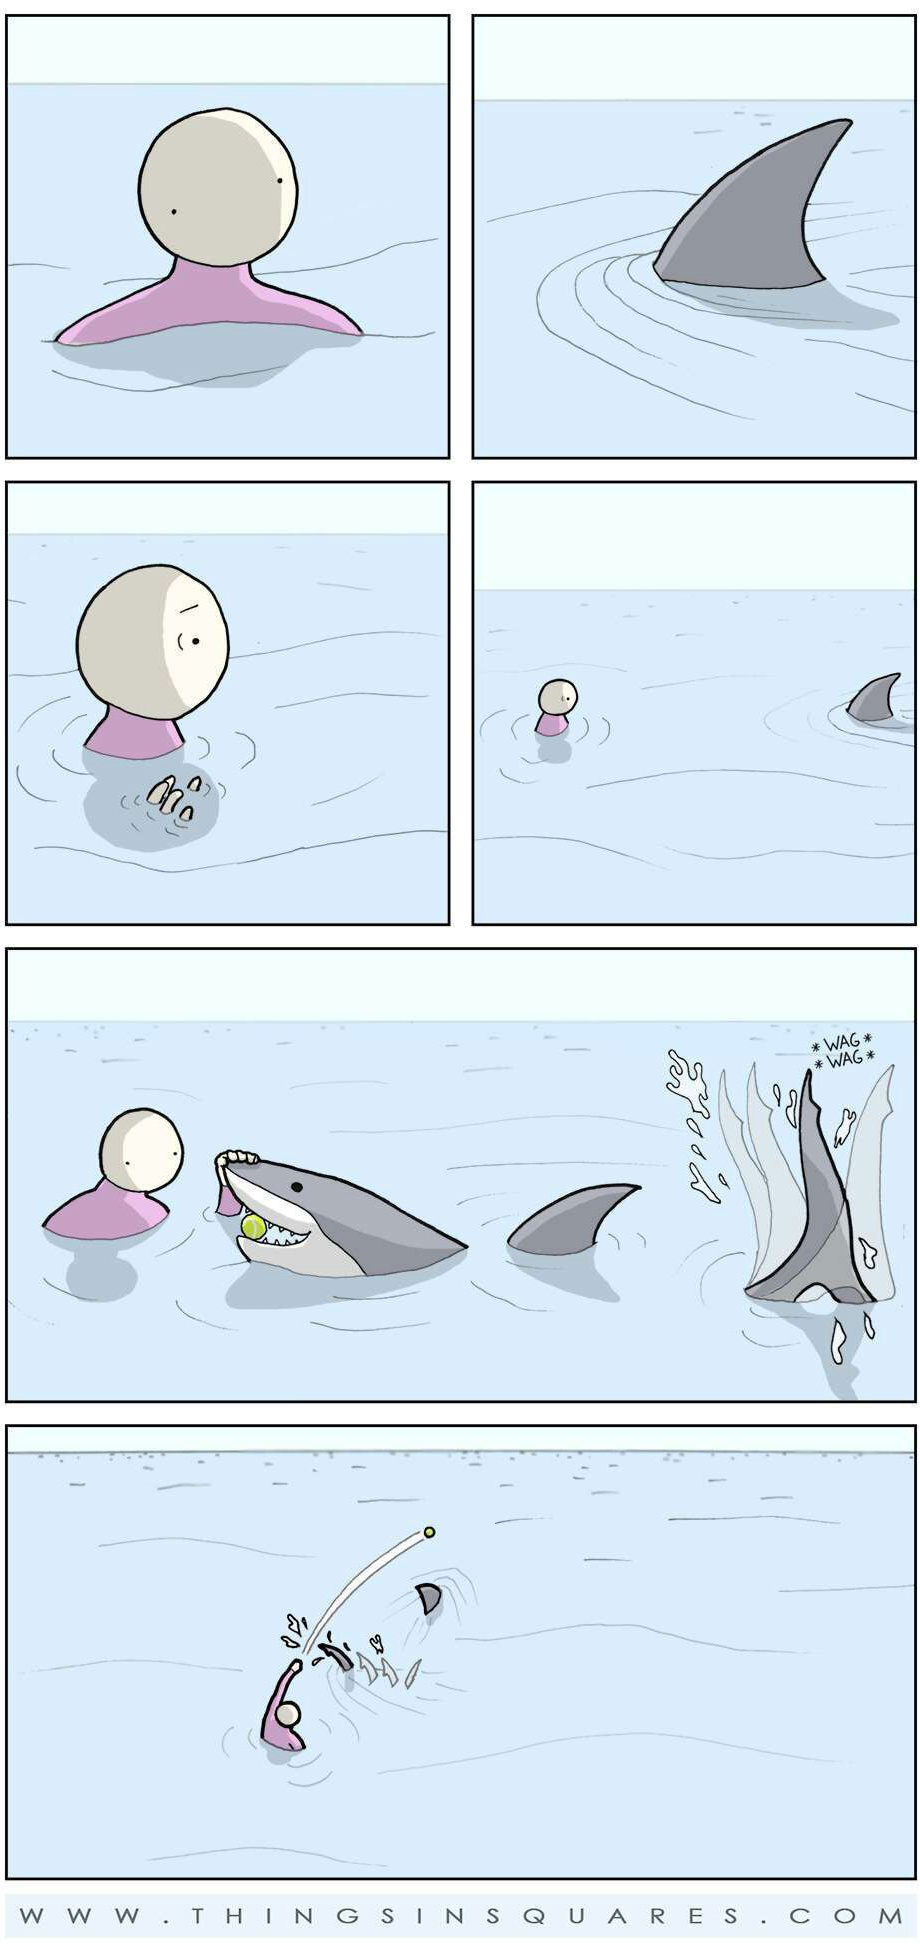 parfois le requin veut juste jouer!!! Ahahaha - meme